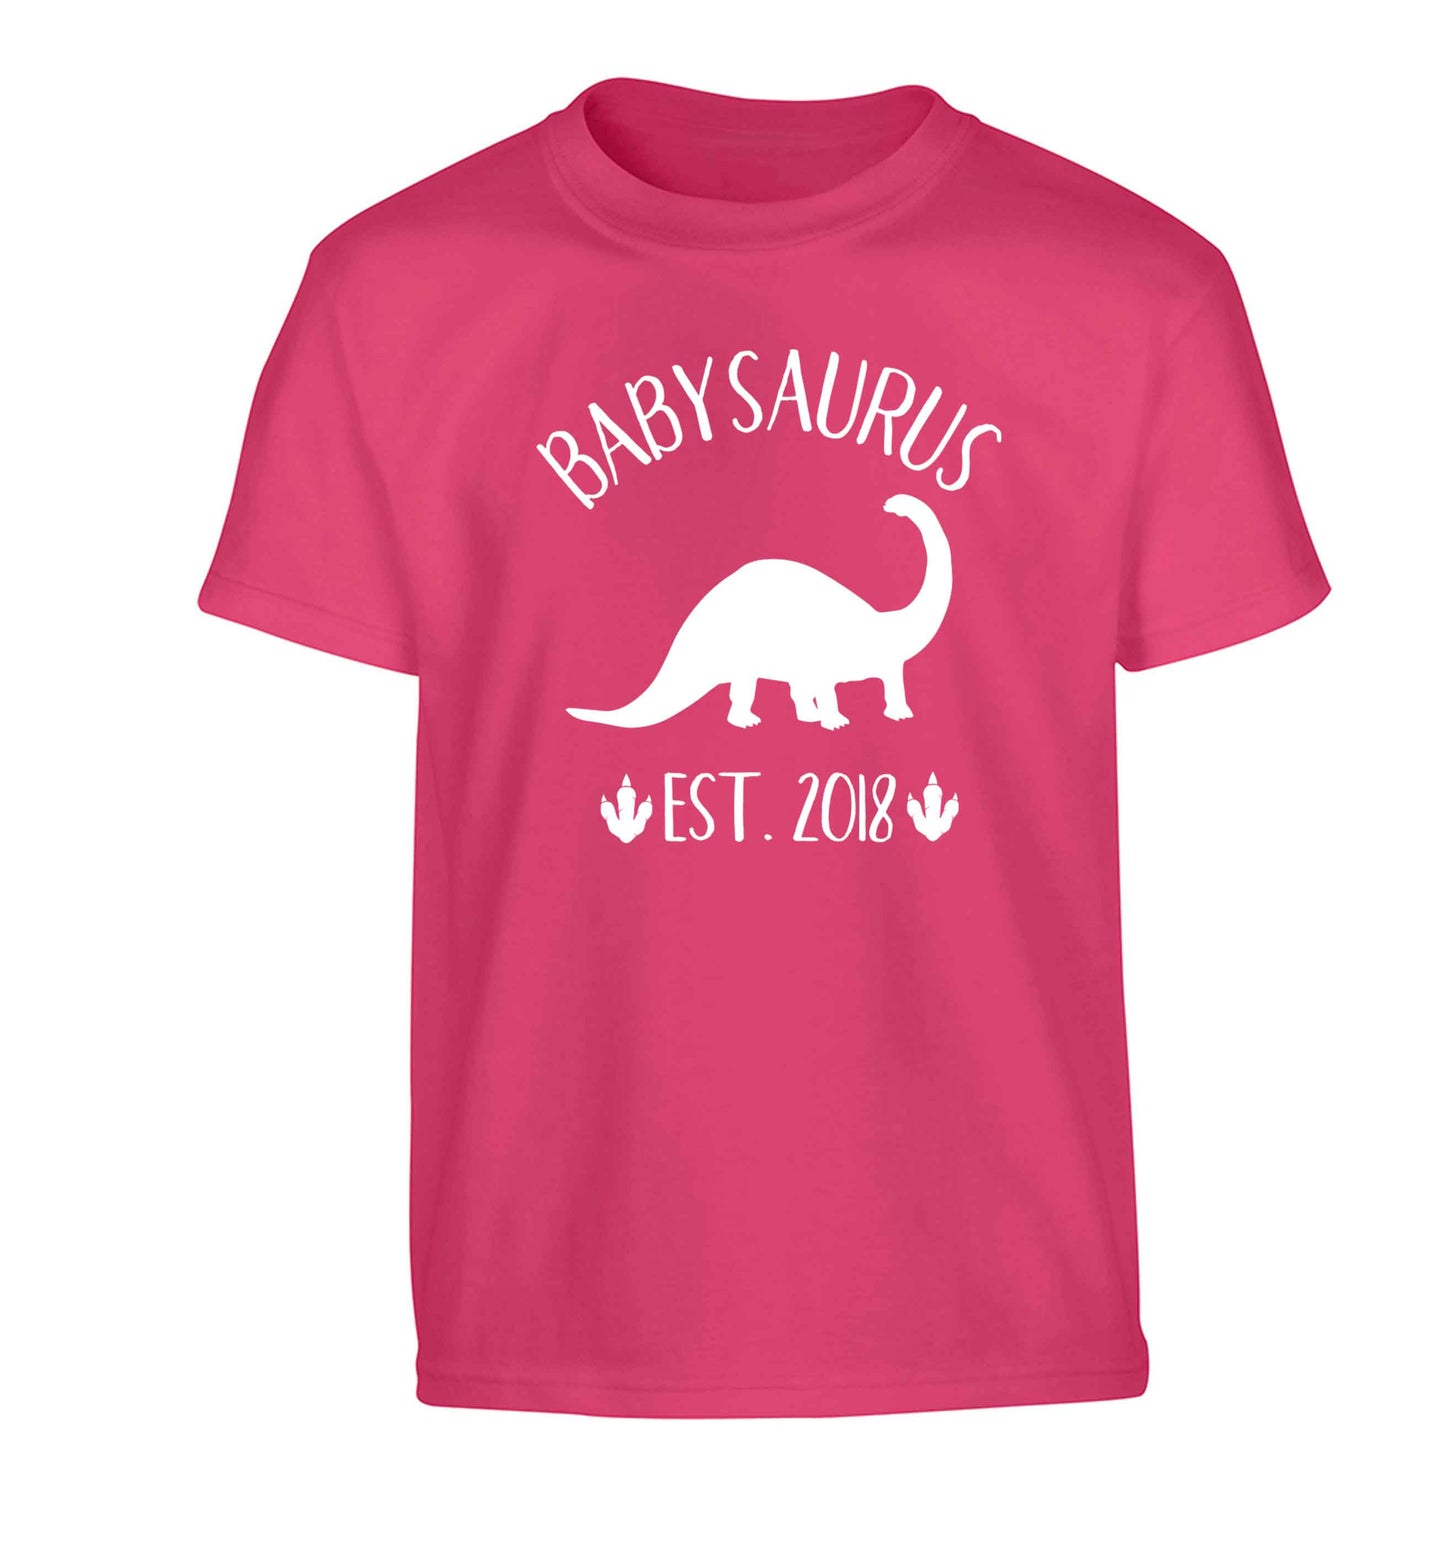 Personalised babysaurus since (custom date) Children's pink Tshirt 12-13 Years